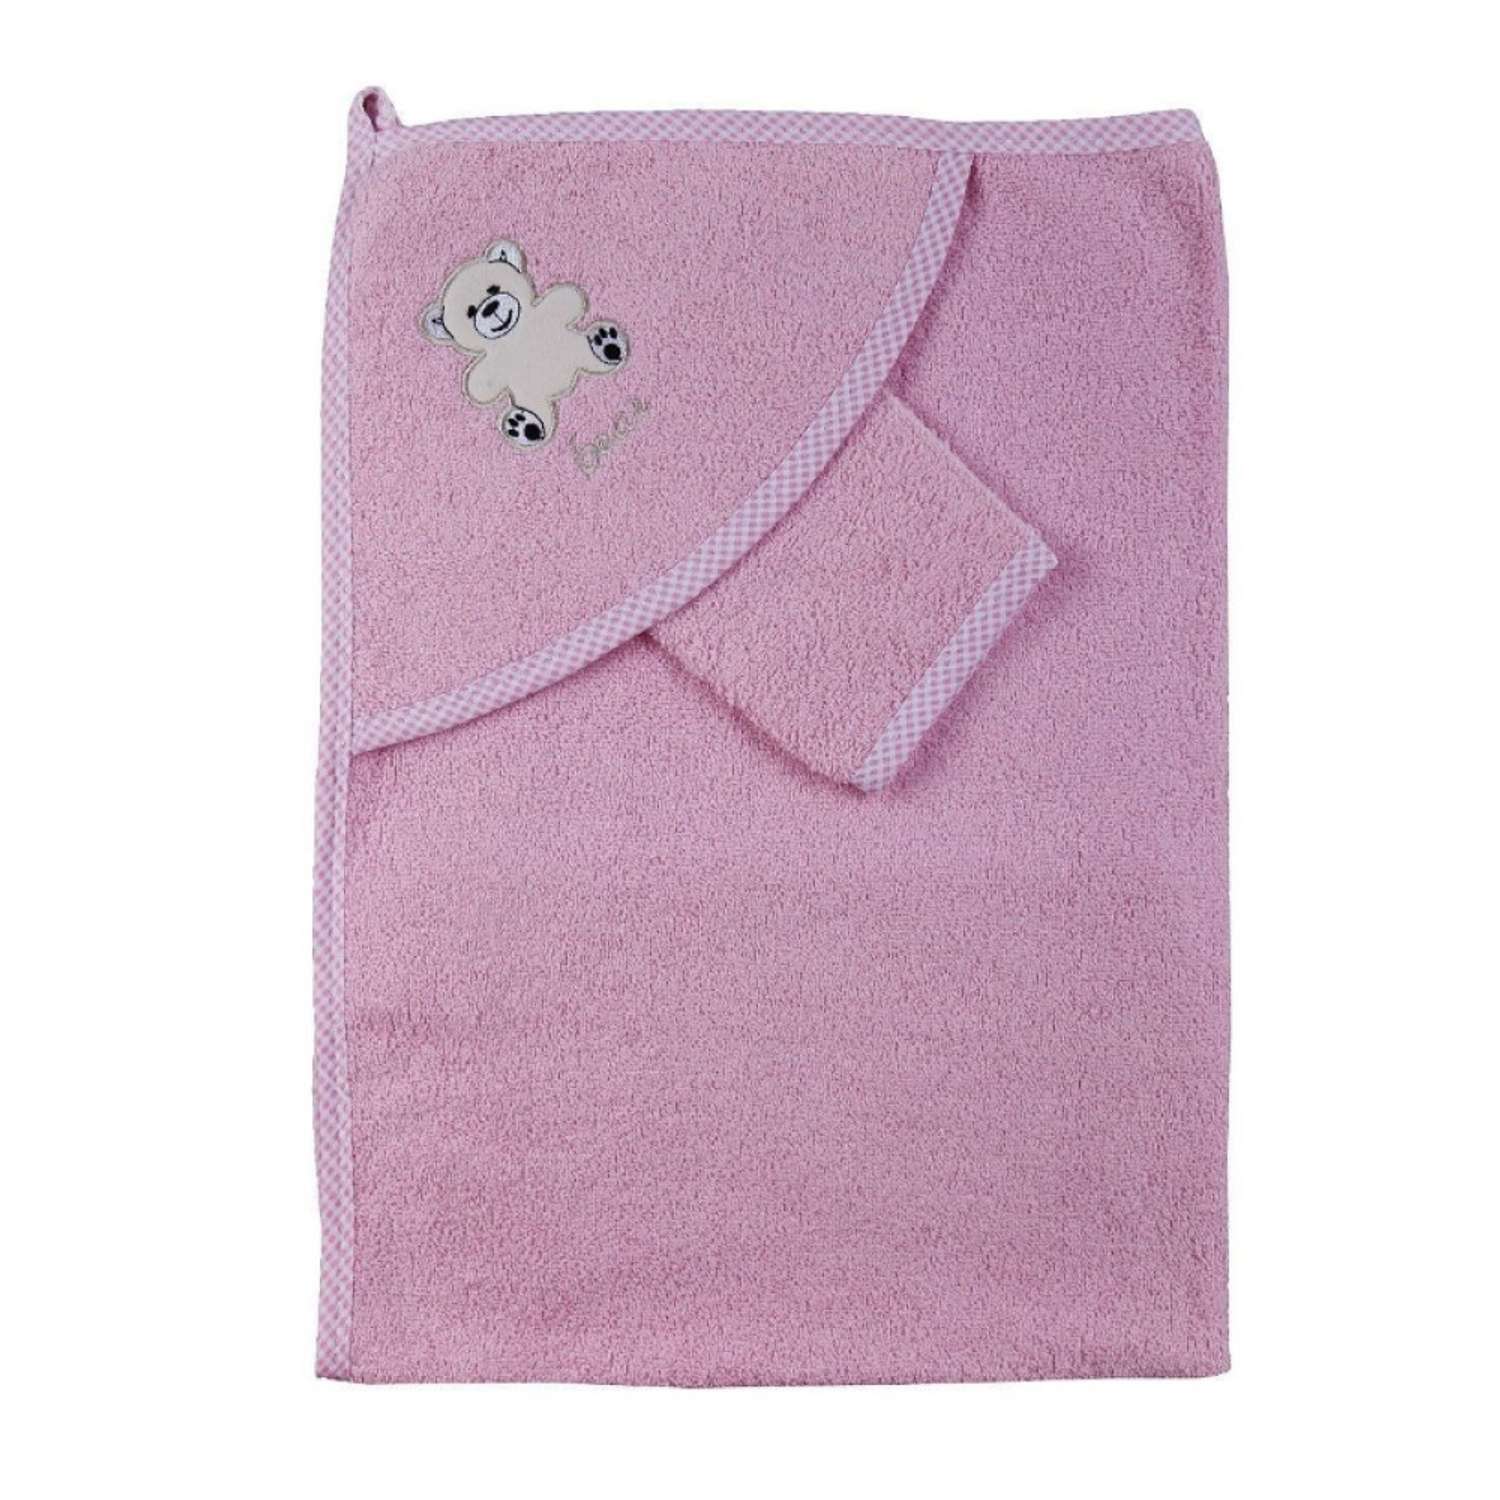 Набор для купания малыша M-BABY махровое полотенце с уголком и рукавичка 100% хлопок слоники/розовый - фото 1